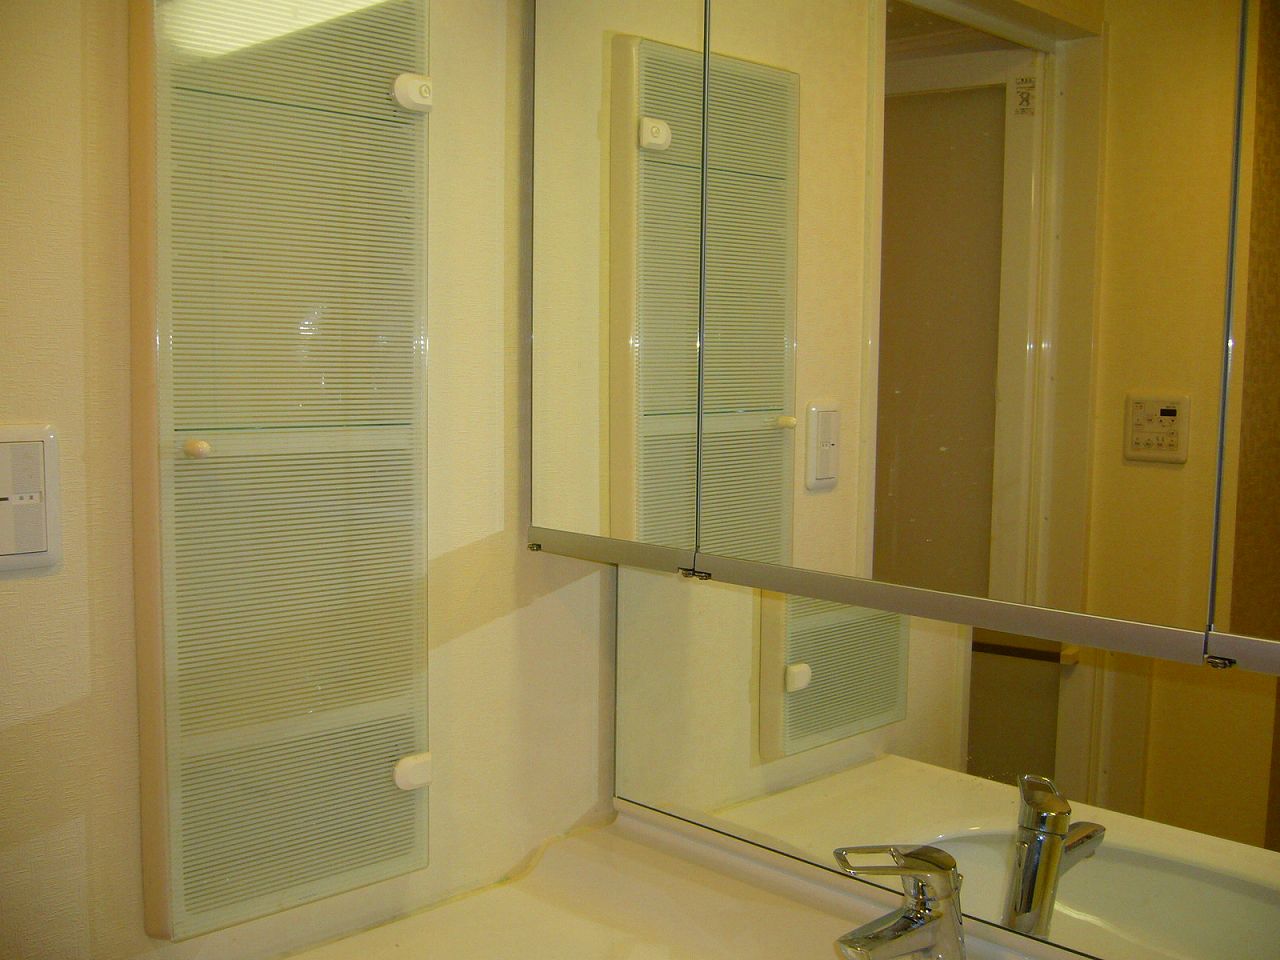 Washroom. Of the three-sided mirror is a wash basin